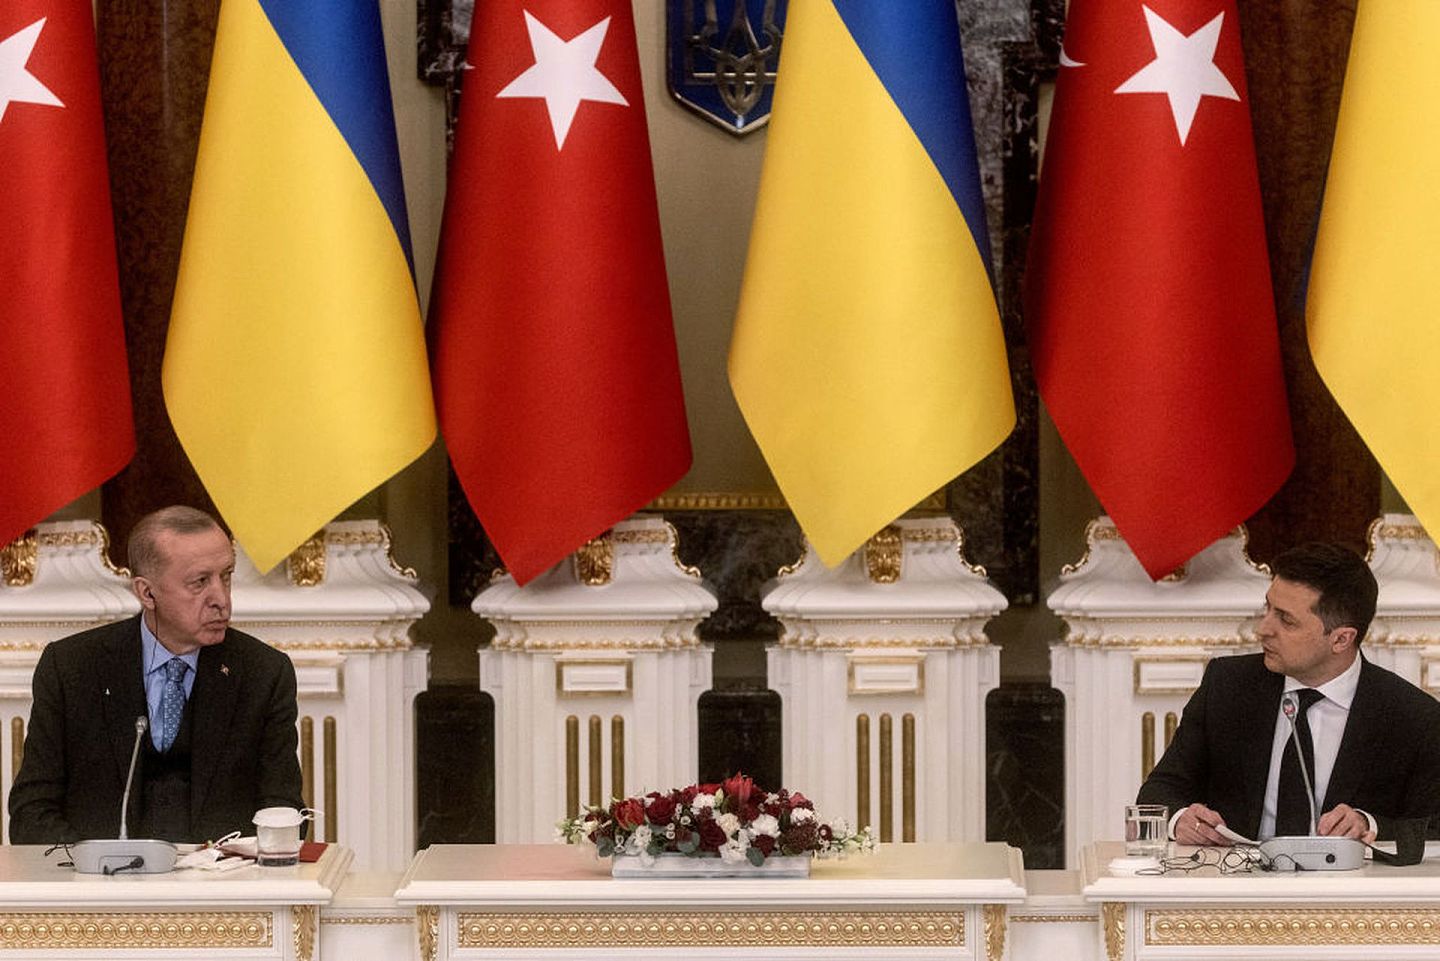 土耳其总统埃尔多安（Recep Tayyip Erdogan）2月3日访问乌克兰，与乌克兰总统泽连斯基（Volodymyr Zelensky）会谈大约三小时，签署多项合作协议，包括自由贸易协定，并表示愿意主办俄乌领袖或技术级别峰会，尝试化解危机。